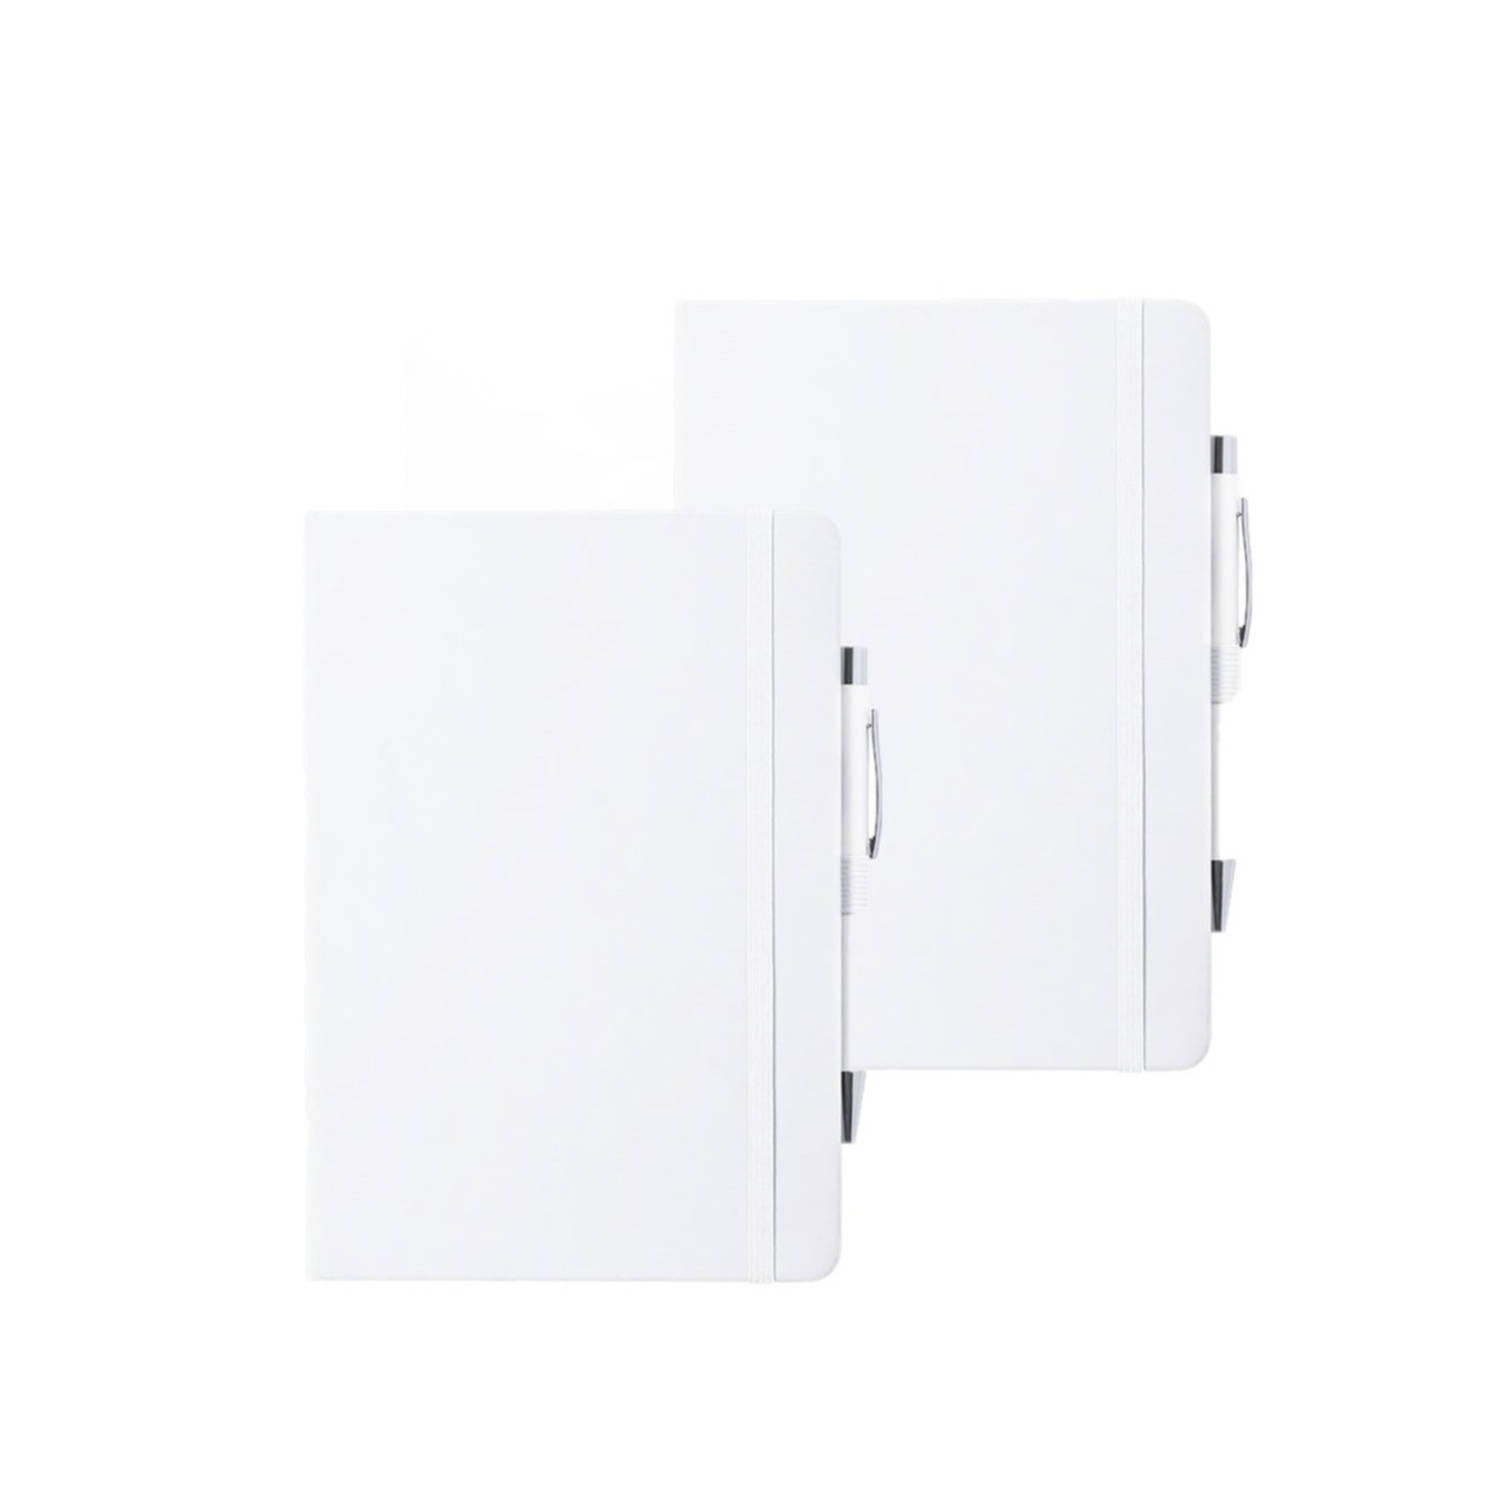 Set van 2x stuks luxe notitieboekje gelinieerd wit met elastiek en pen A5 formaat - Notitieboek